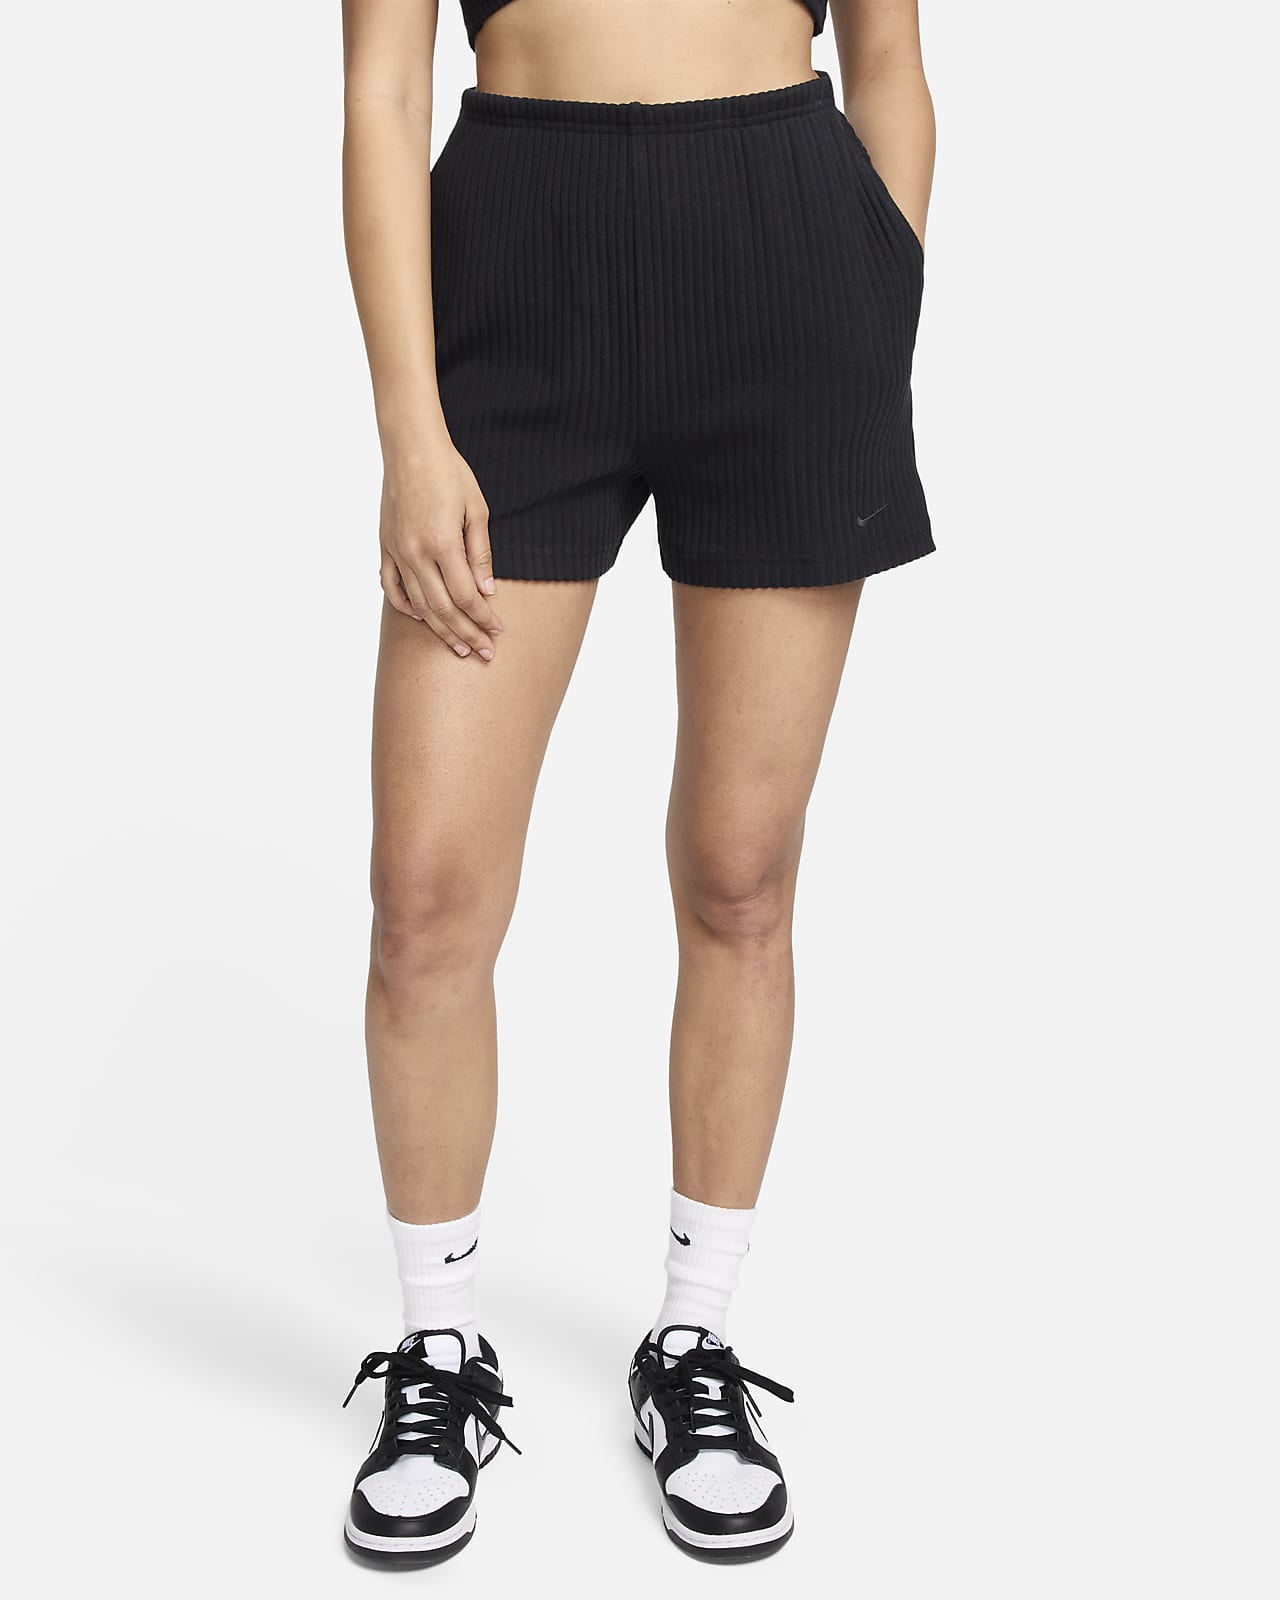 Γυναικείο ψηλόμεσο σορτς σε στενή γραμμή με ριμπ ύφανση Nike Sportswear Chill Knit 8 cm